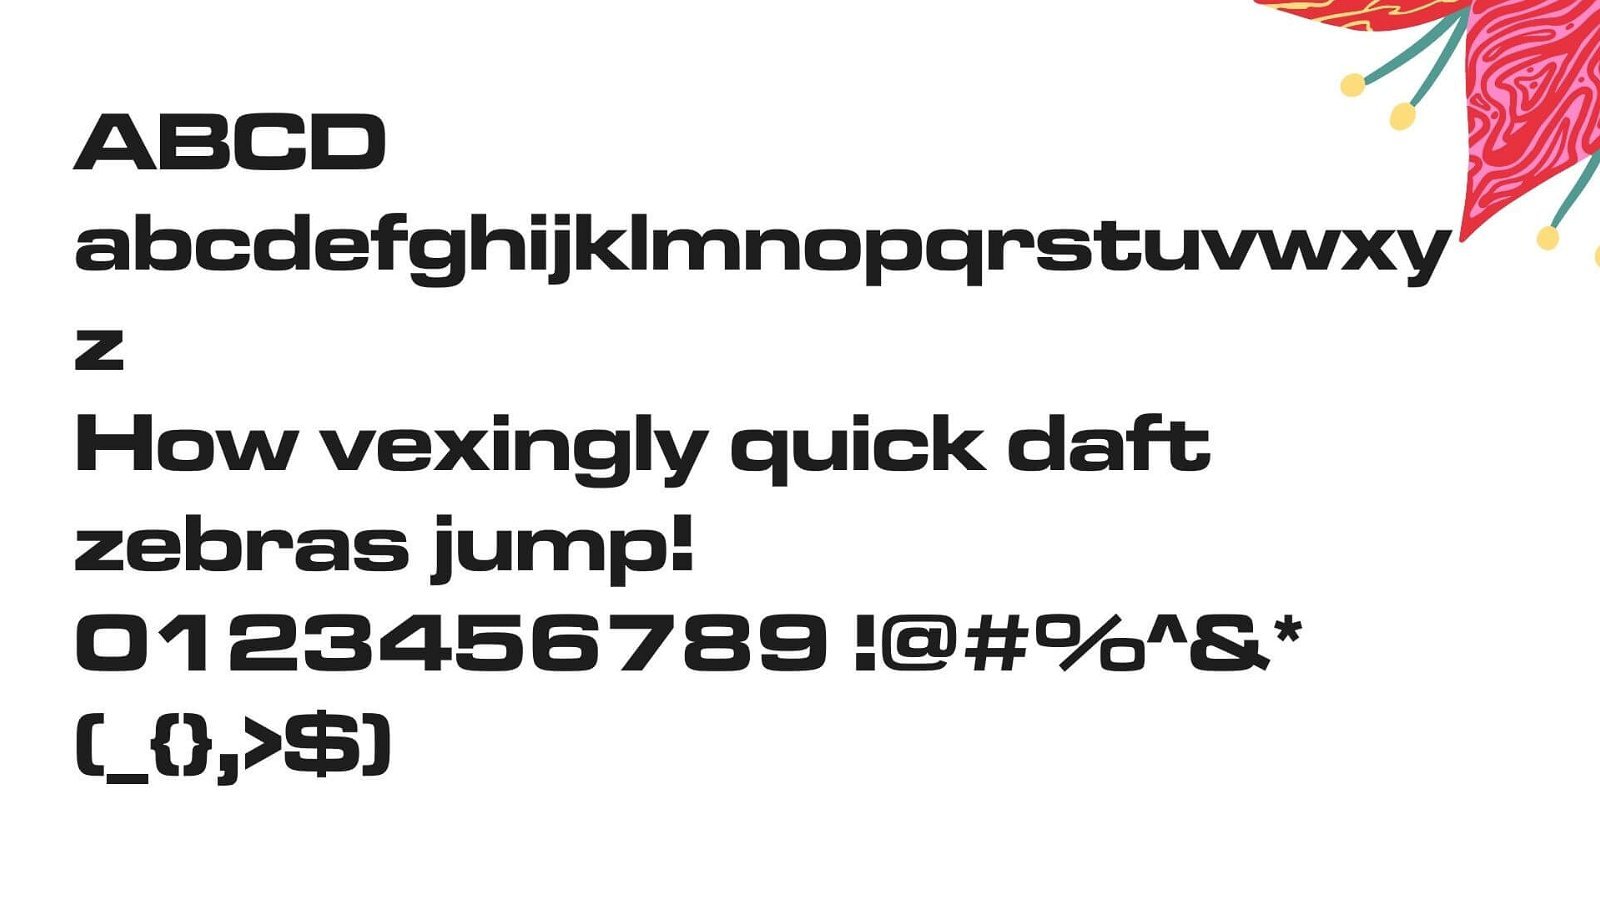 Microgamma Font View - Microgramma Font Free Download